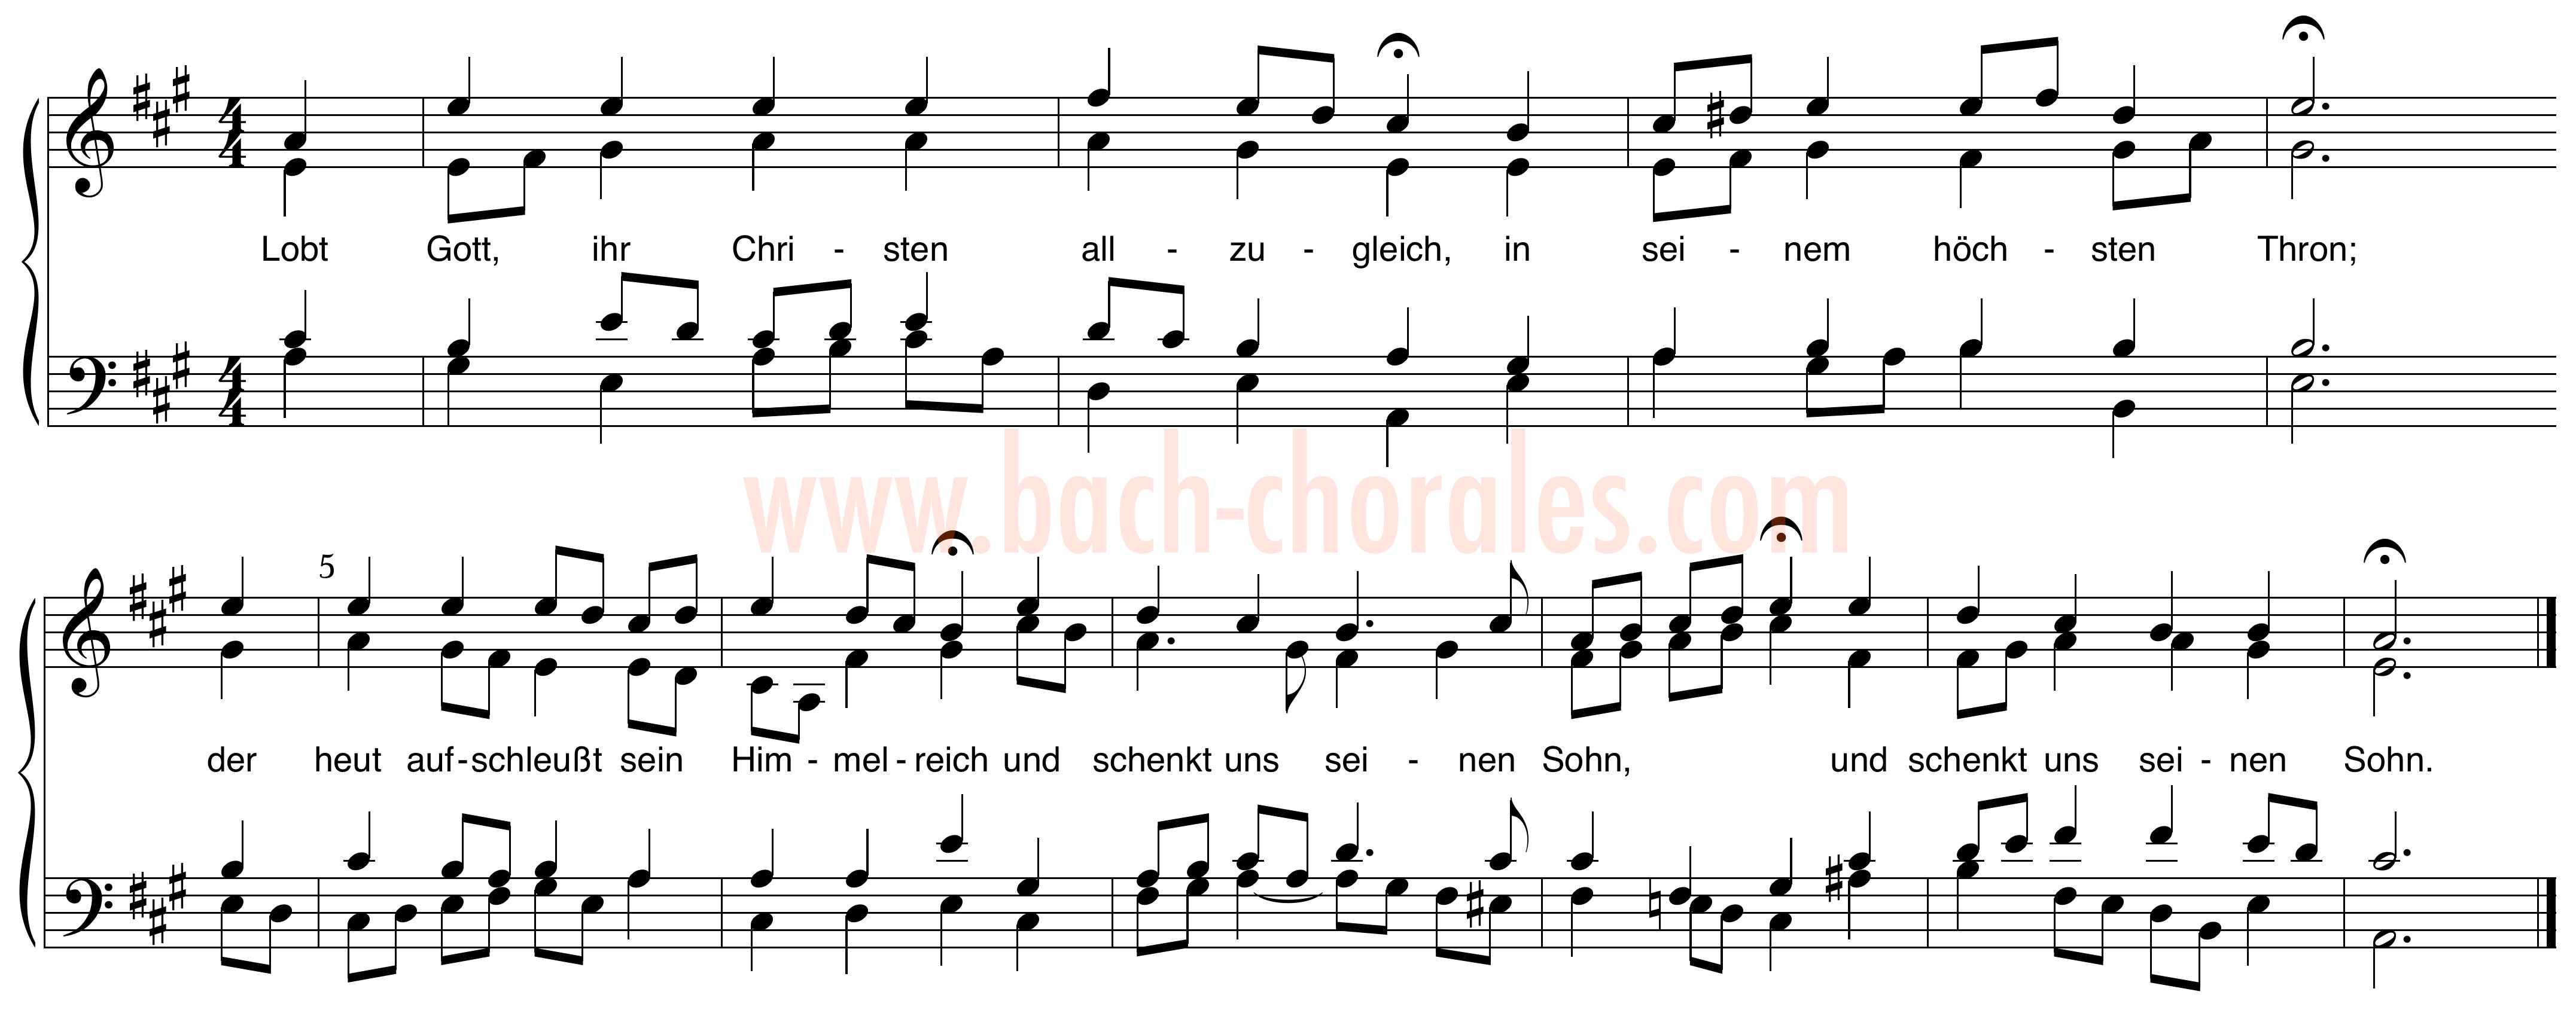 notenbeeld BWV 376 op https://www.bach-chorales.com/